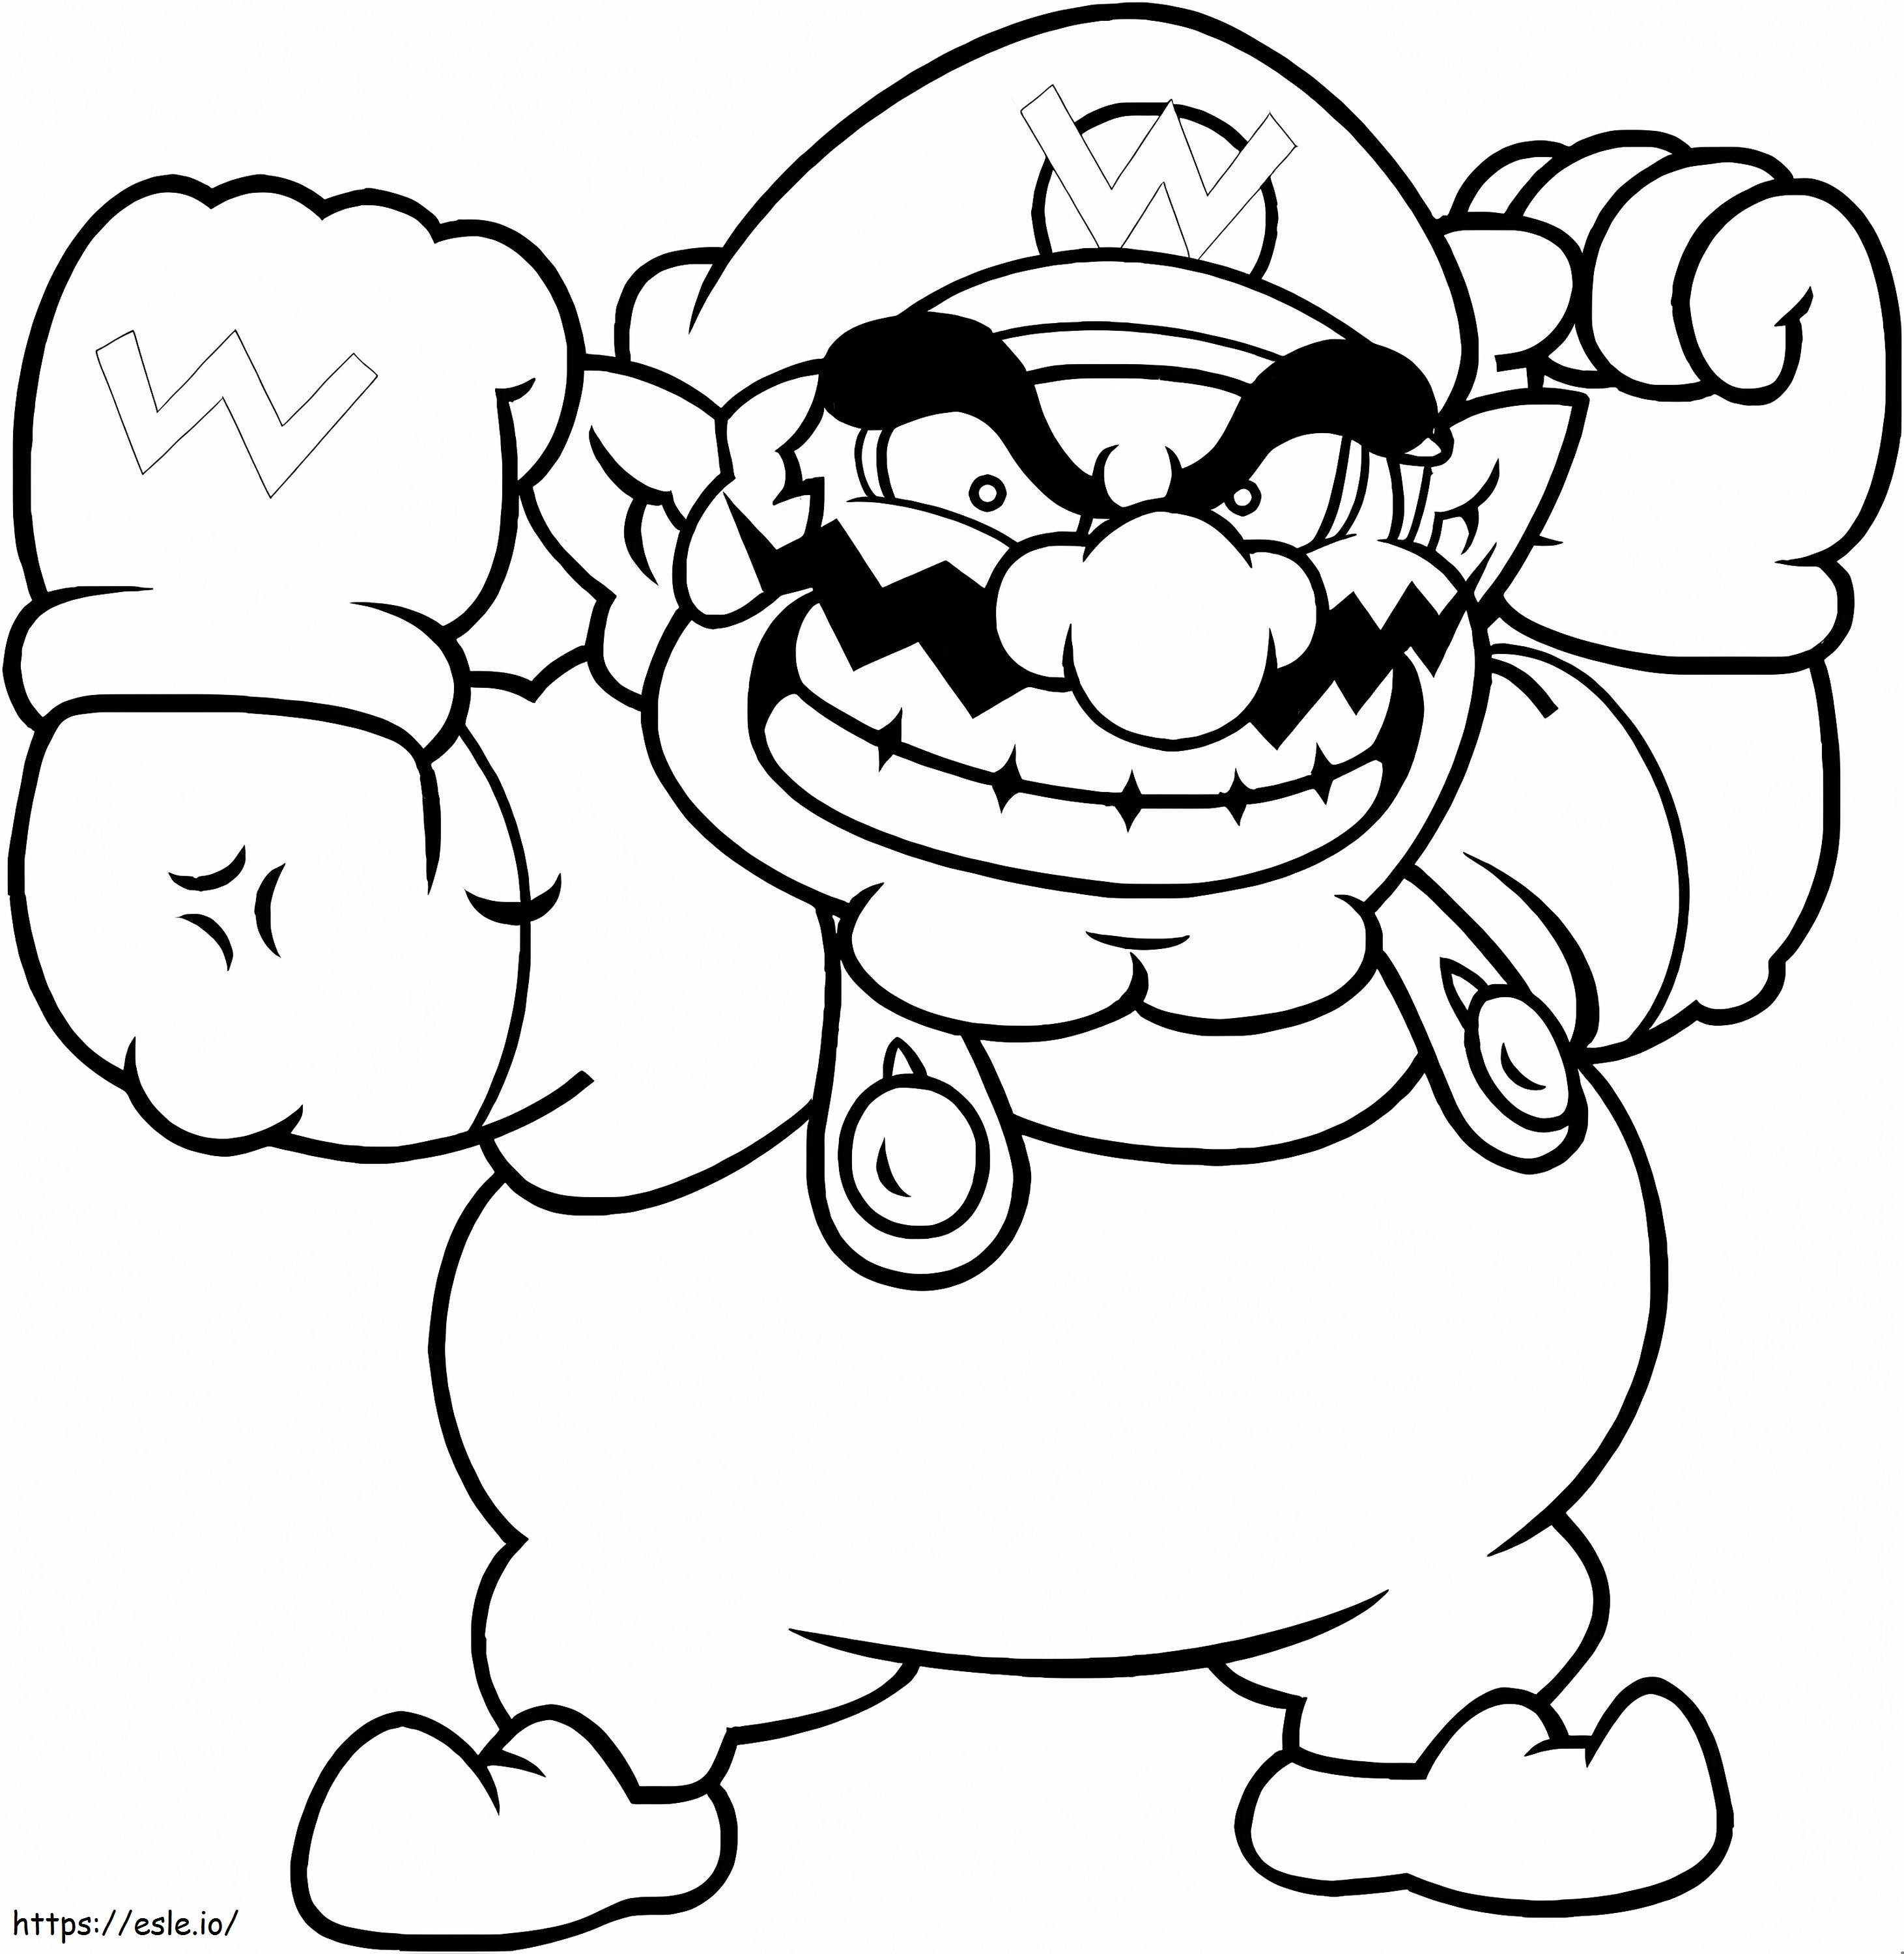 Wario de Super Mario para colorear